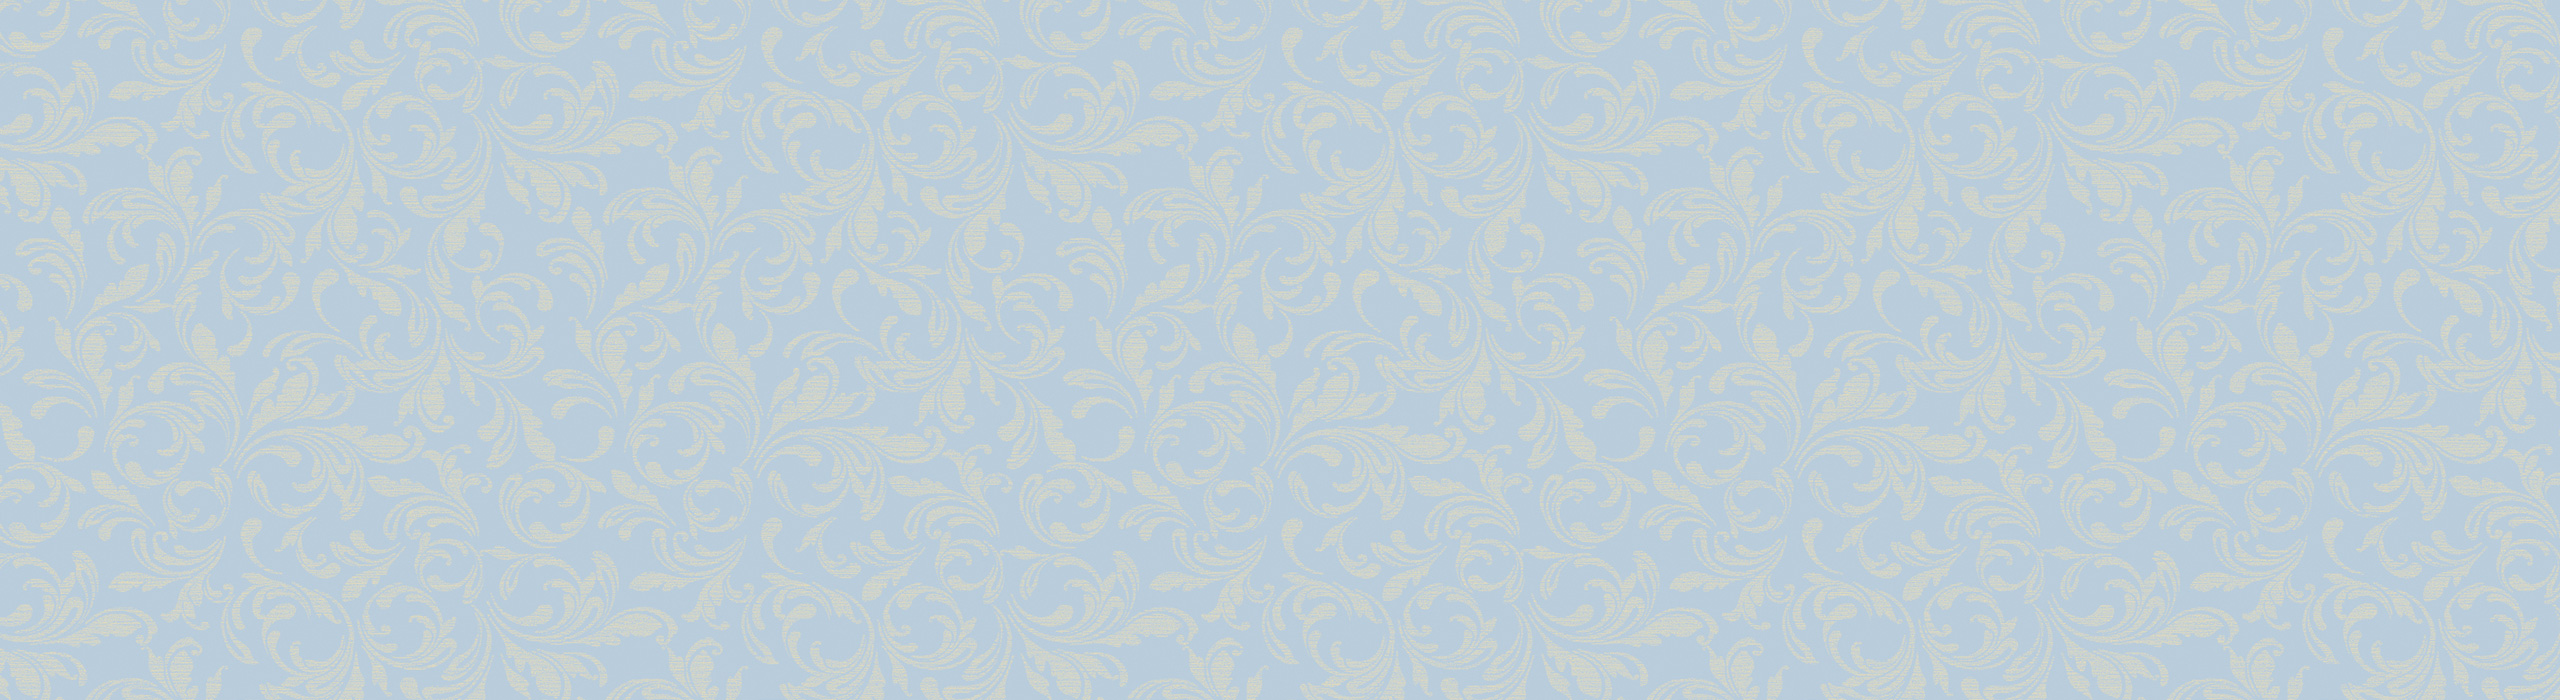 картинка 88278-4 Veluce 2018 Обои виниловые на бумажной основе 1.06*15.6 рисунок орнамент цвет синий